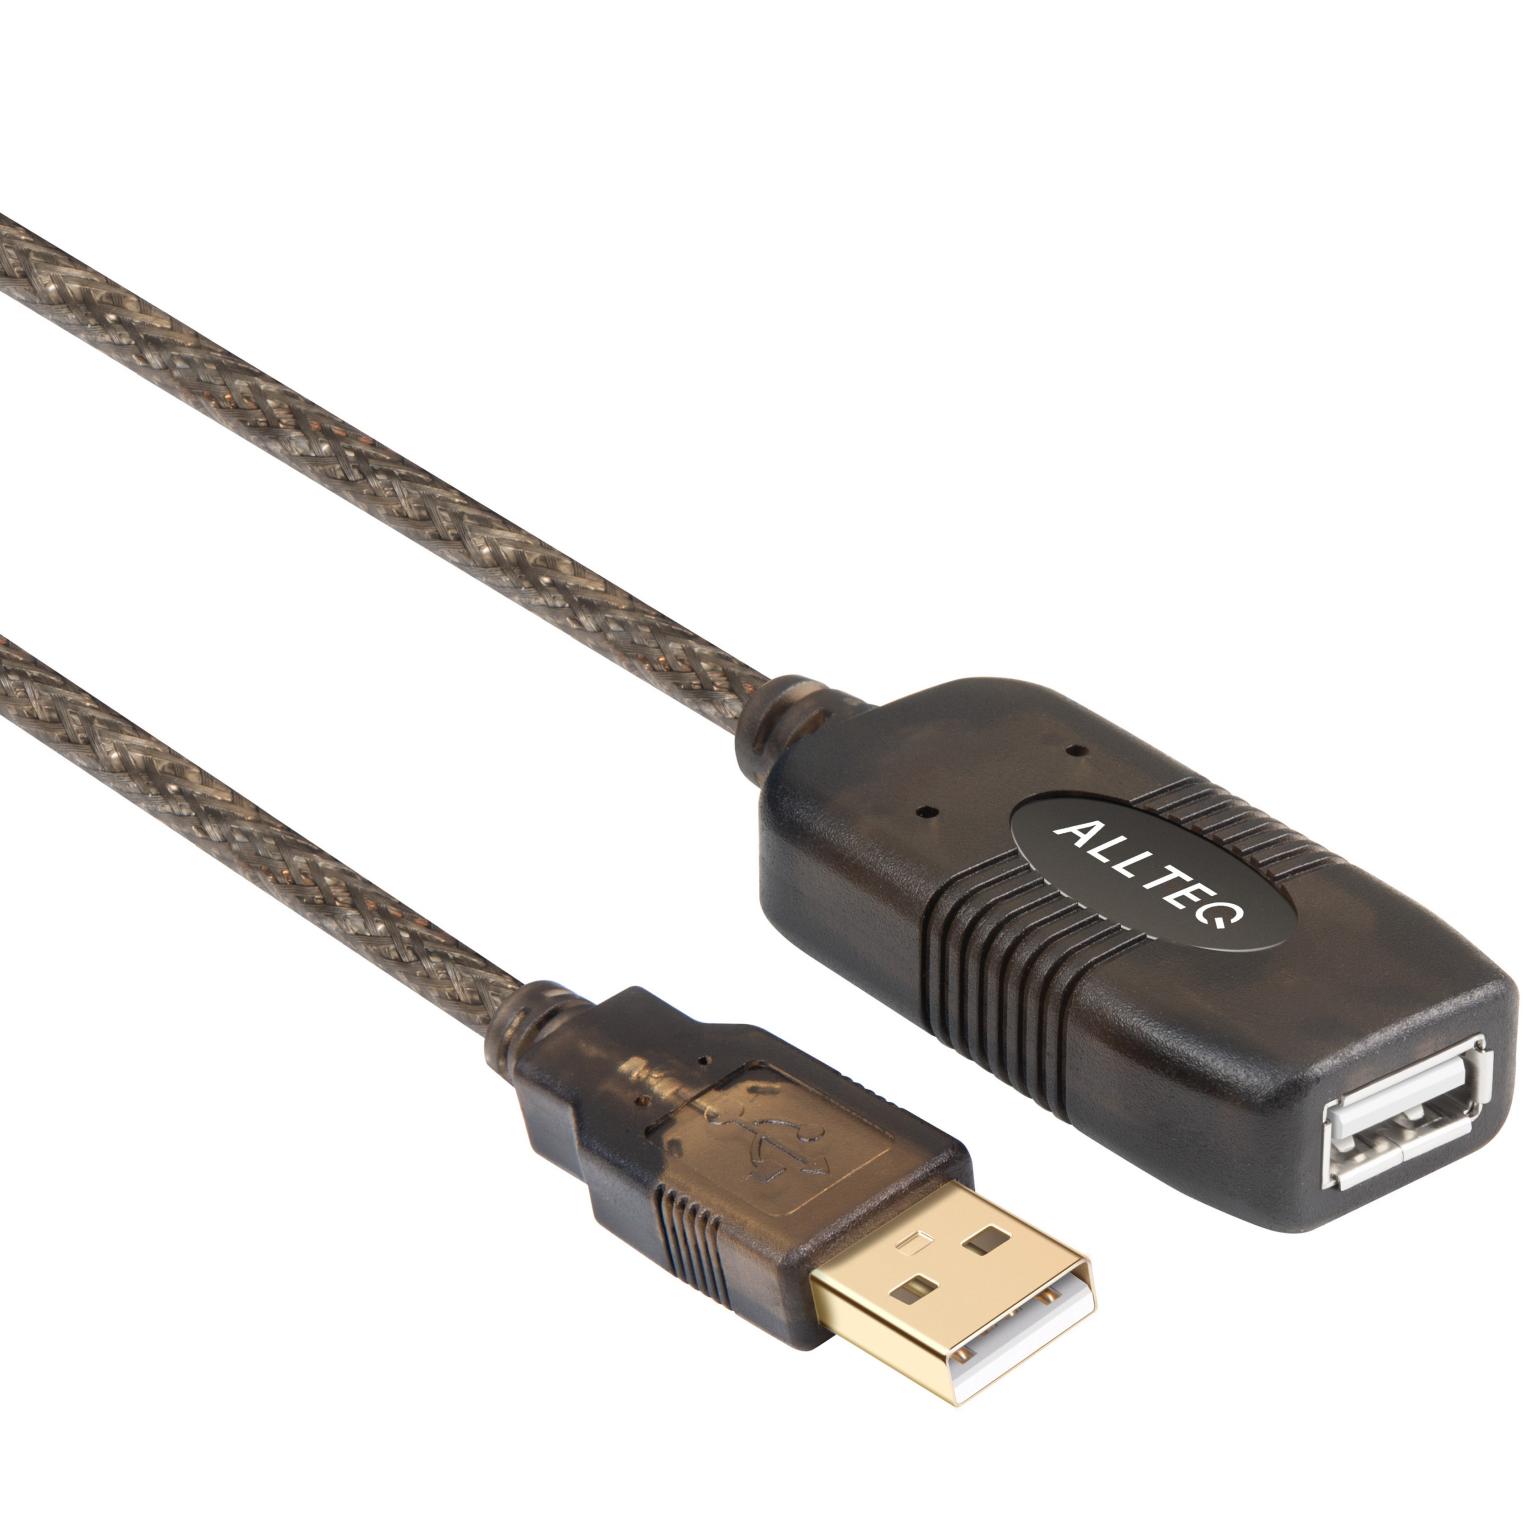 USB 2.0-Winkelverlängerung 0,5m, zur Verringerung der Einbautiefe der USB- Einbau-Adapter